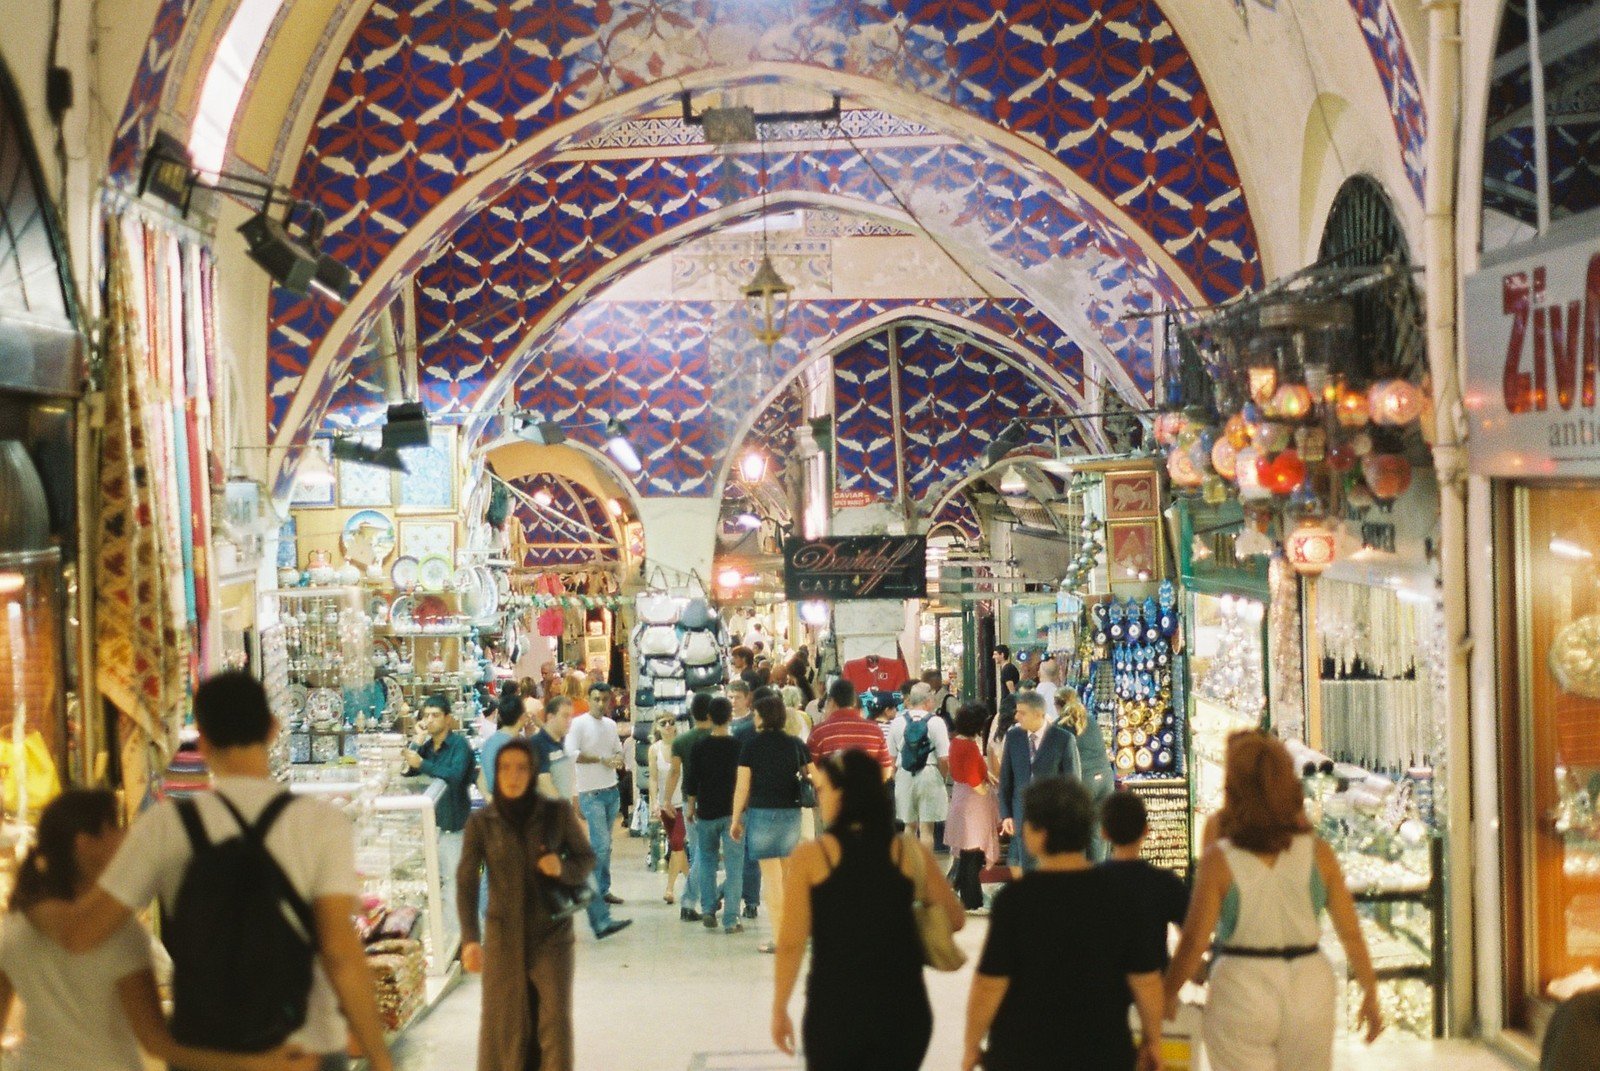 5 способов стать своим в Турции. Часть 1 #ЛайфхакиПоТурции